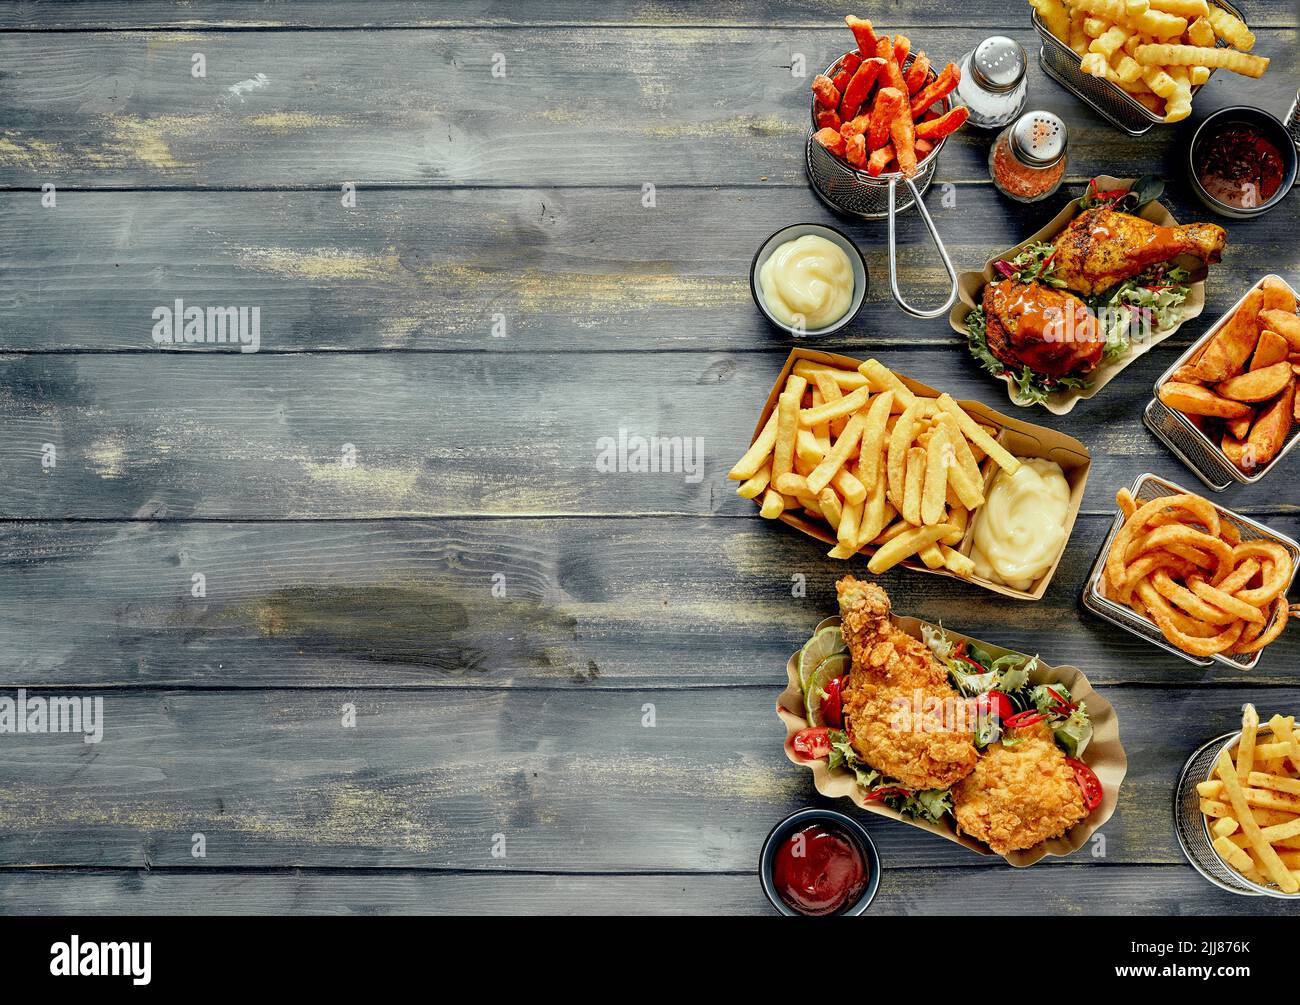 Vista superior de una variedad de sabrosos platos de comida rápida y salsas arregladas sobre una mesa de madera Foto de stock